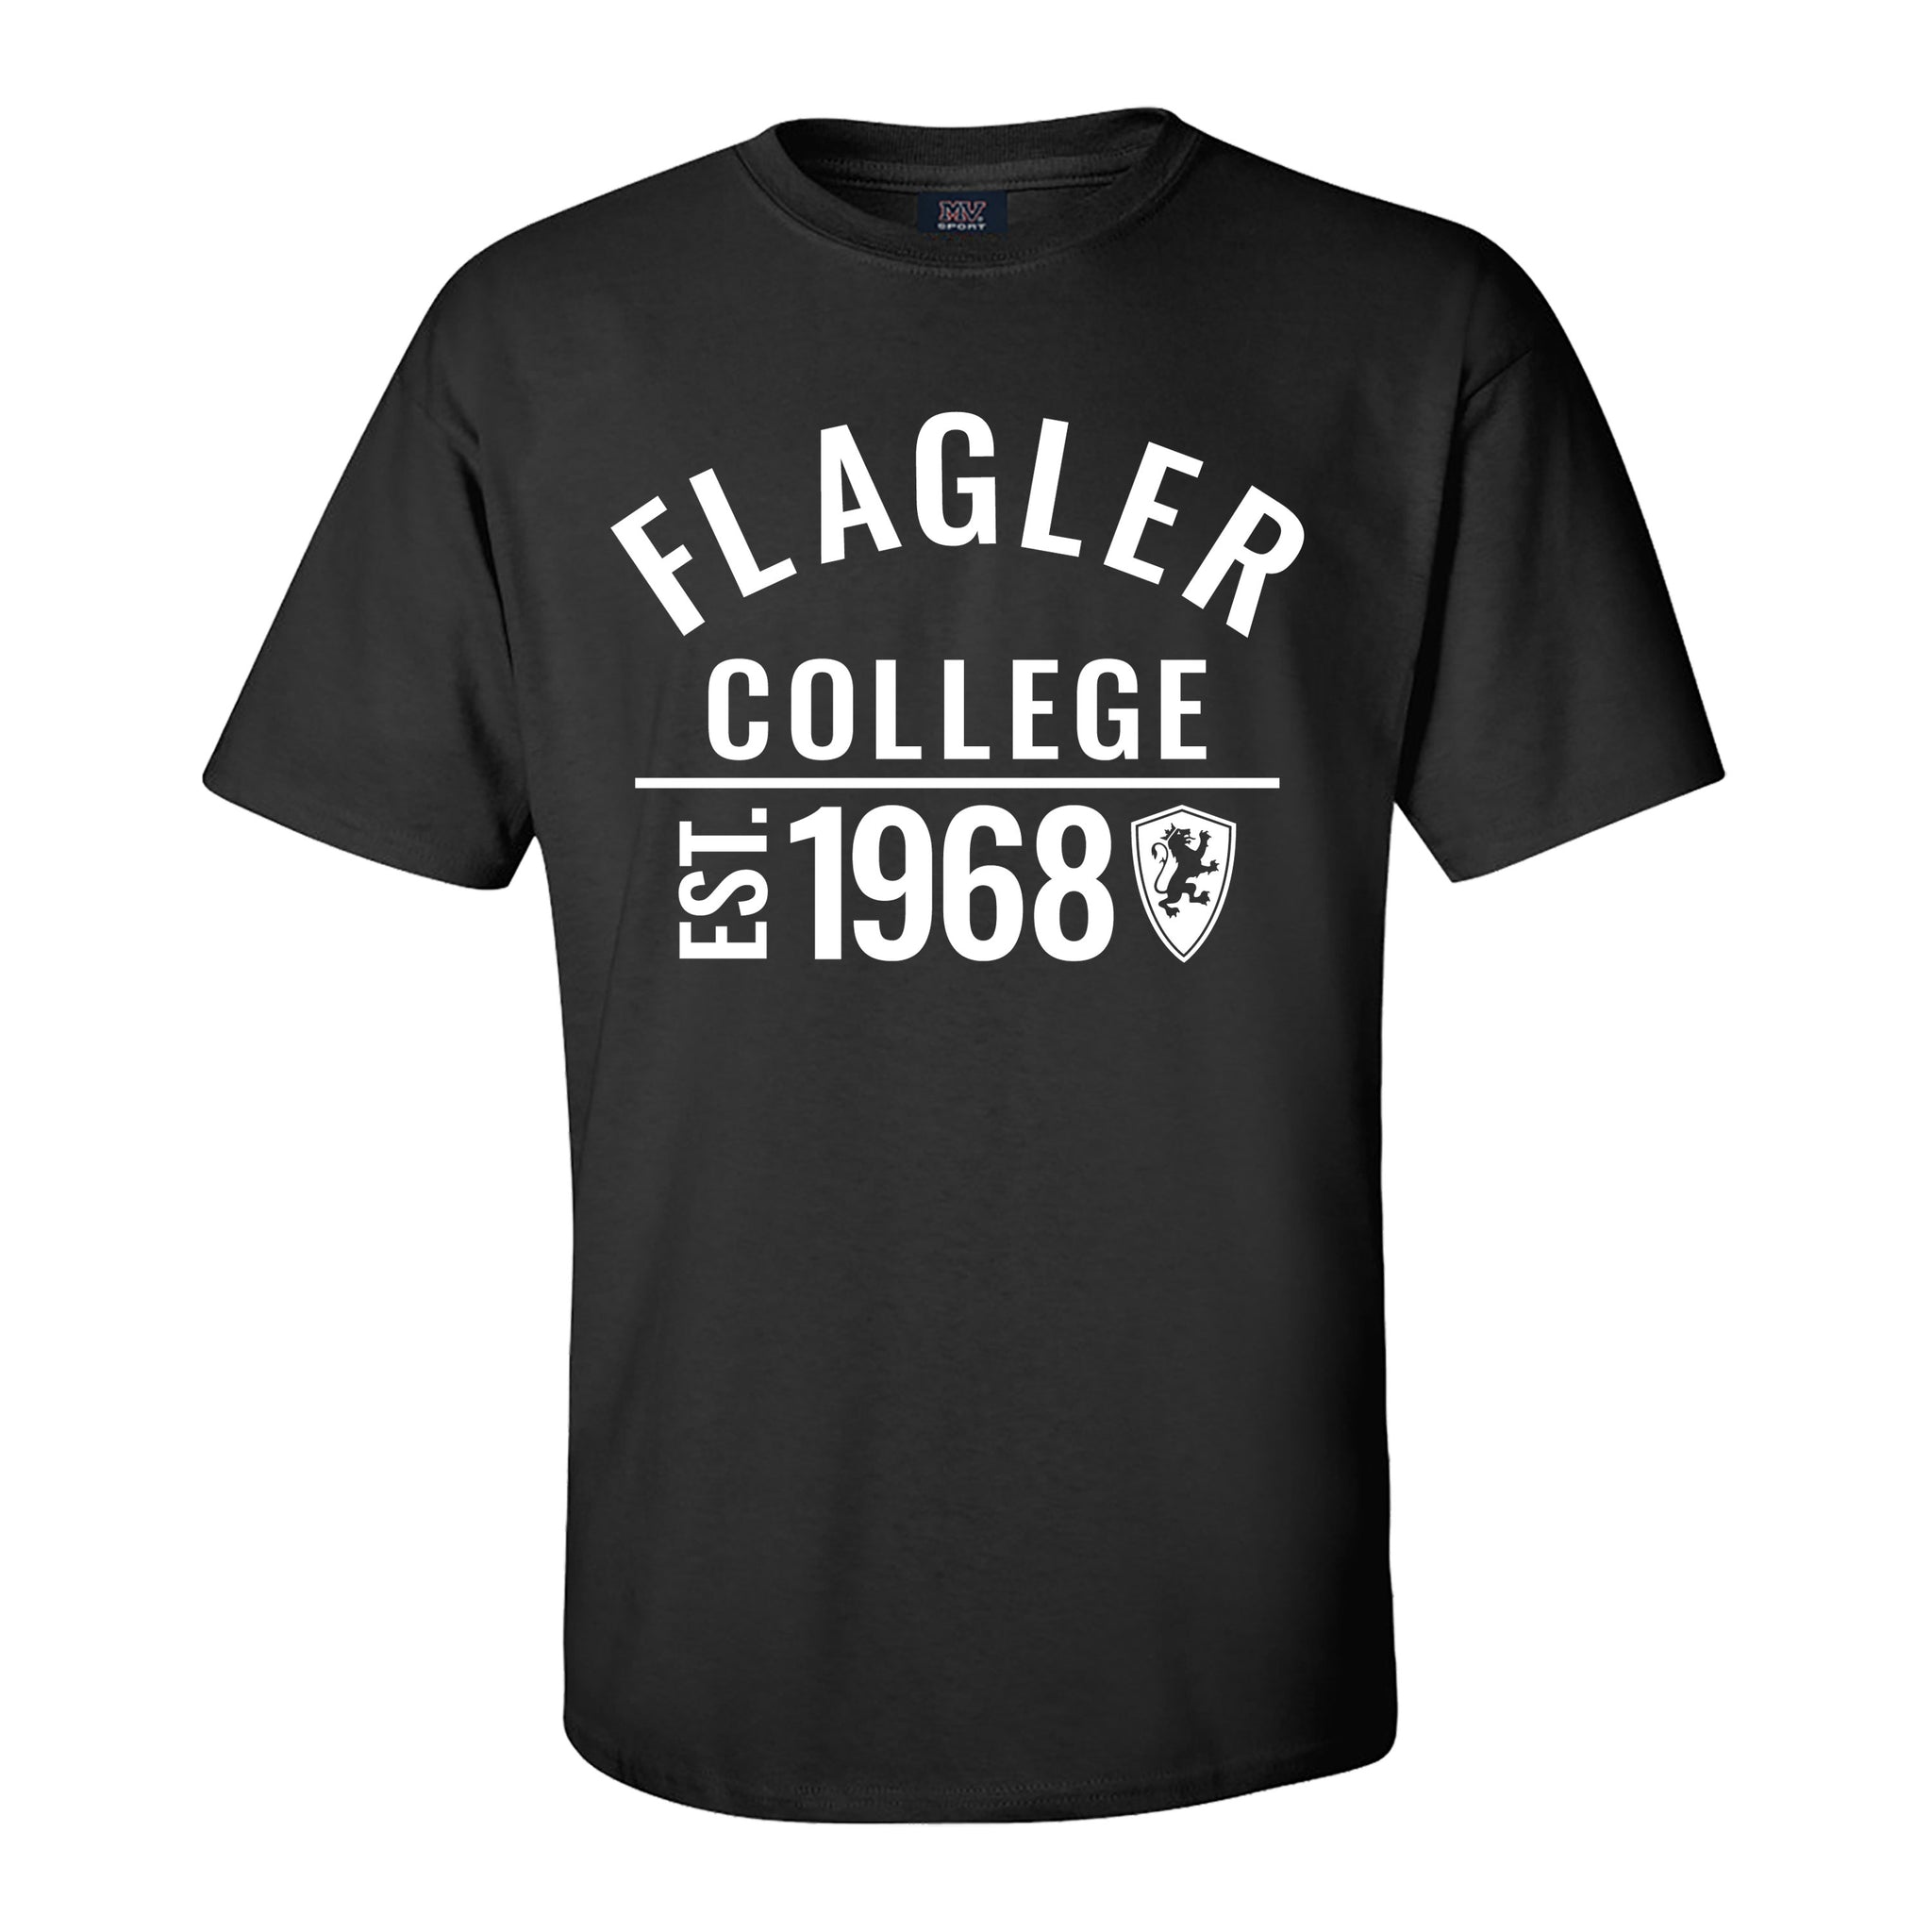 Black solid t-shirt wit  white imprint saying Flagler over college over est 1968 Flagler Shield logo